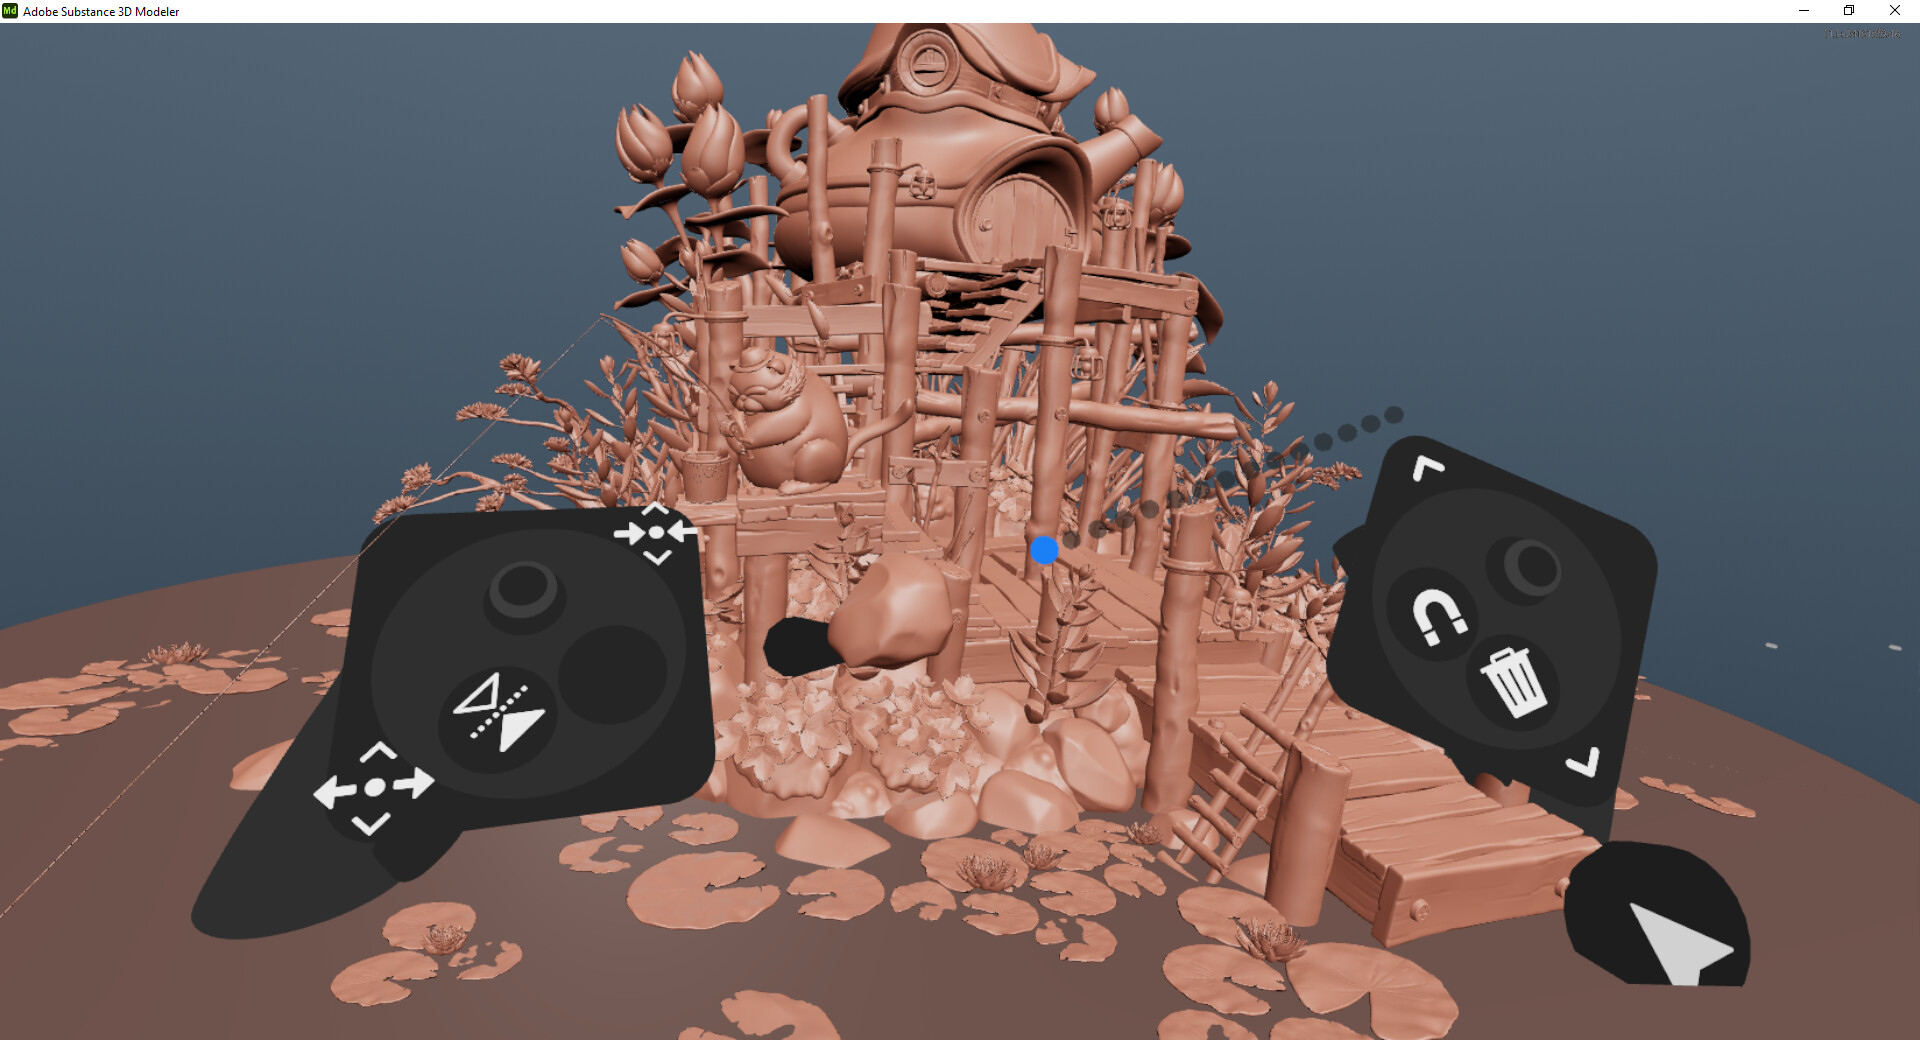 Adobe 物质 3D 建模器（Adobe Substance 3D Modeler）